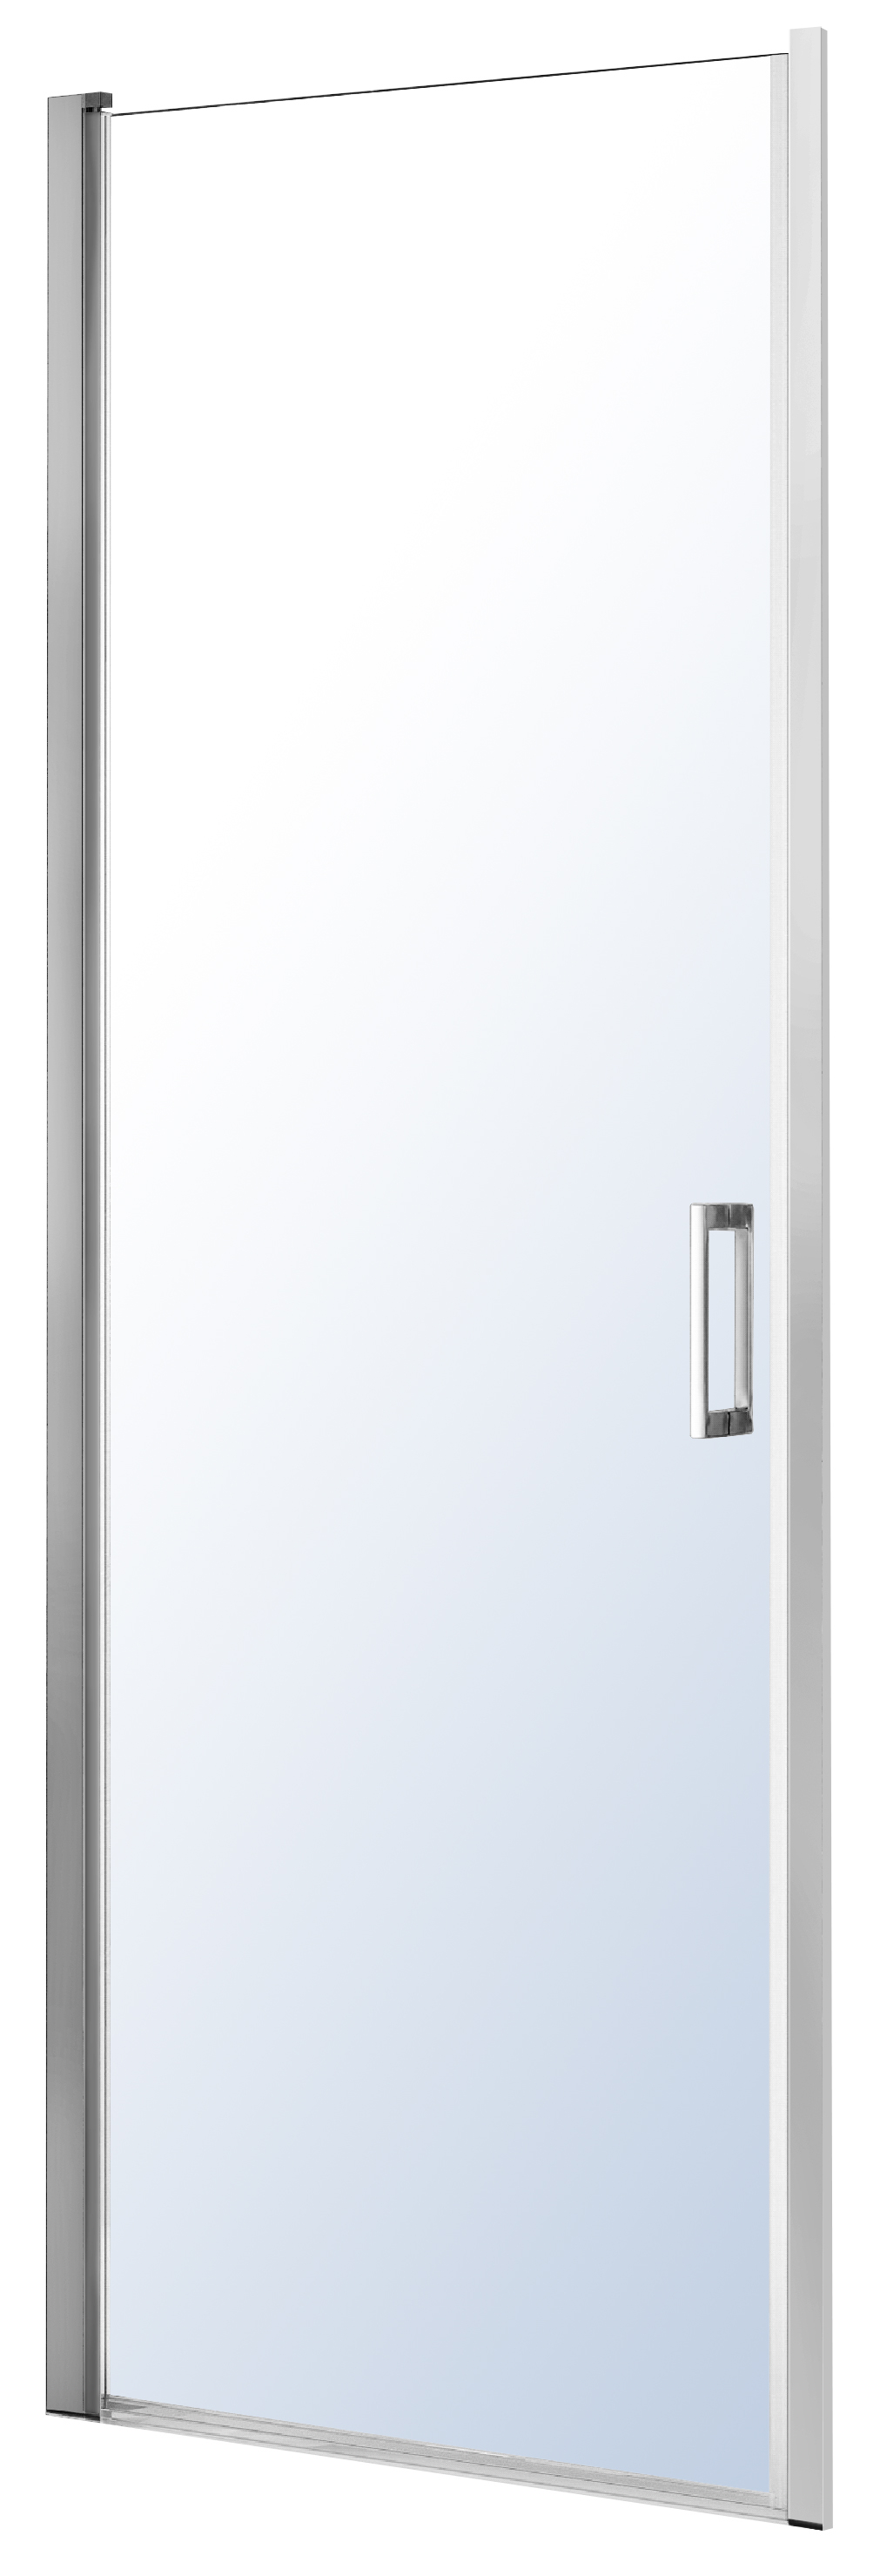 Двері душової кабіни Eger 599-156 90x195